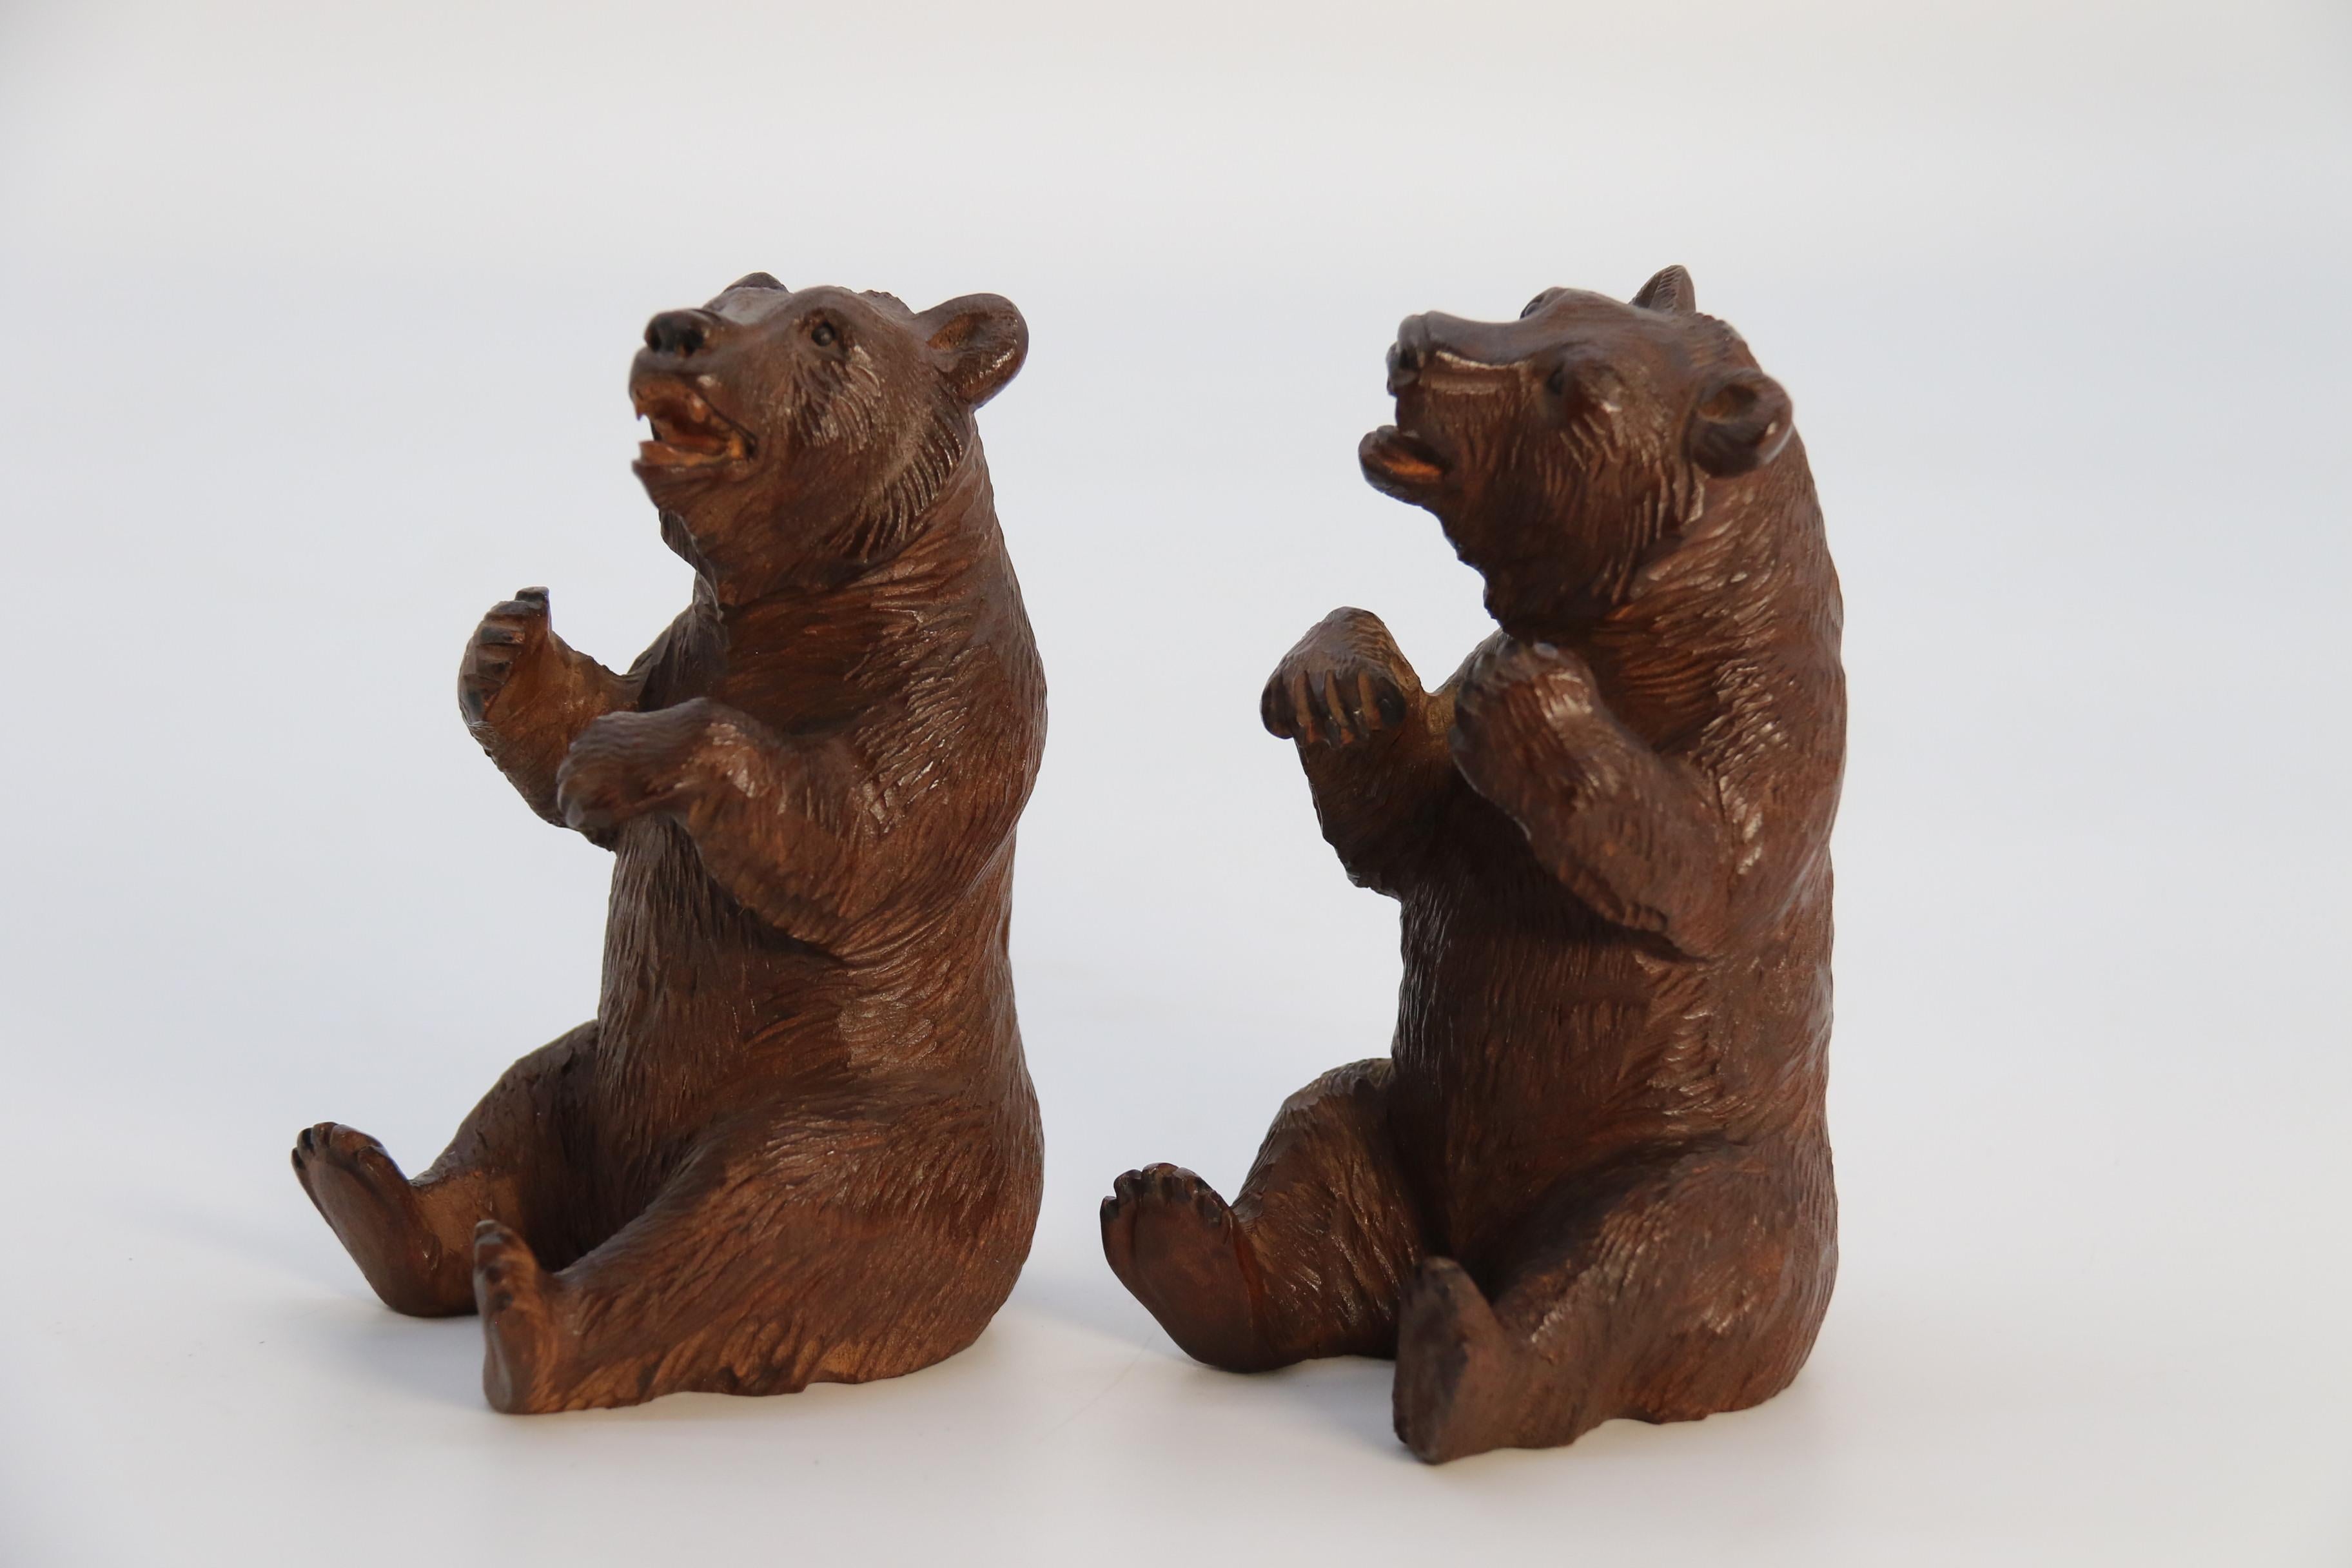 Dieses bezaubernde Paar sitzender Schweizer/Deutscher Schwarzwaldbären aus Lindenholz ist selten als Originalpaar erhältlich. Sie sind wunderschön handgeschnitzt und es gibt sie für Links- und Rechtshänder. Der Künstler hat sein Motiv mit viel Liebe